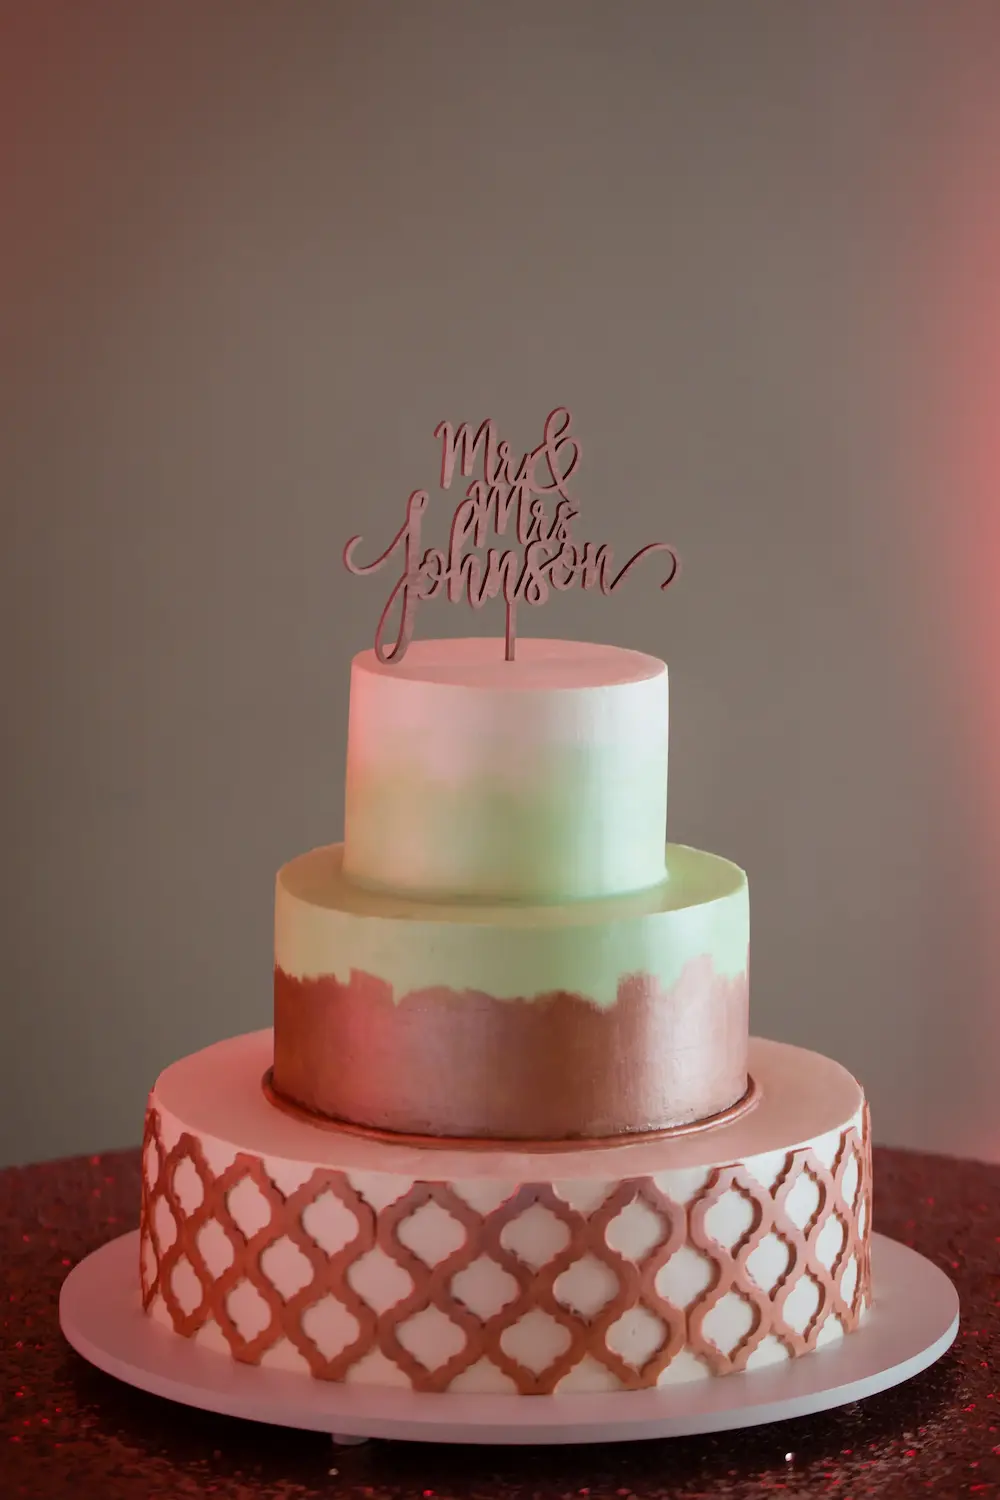 Brown wedding cake